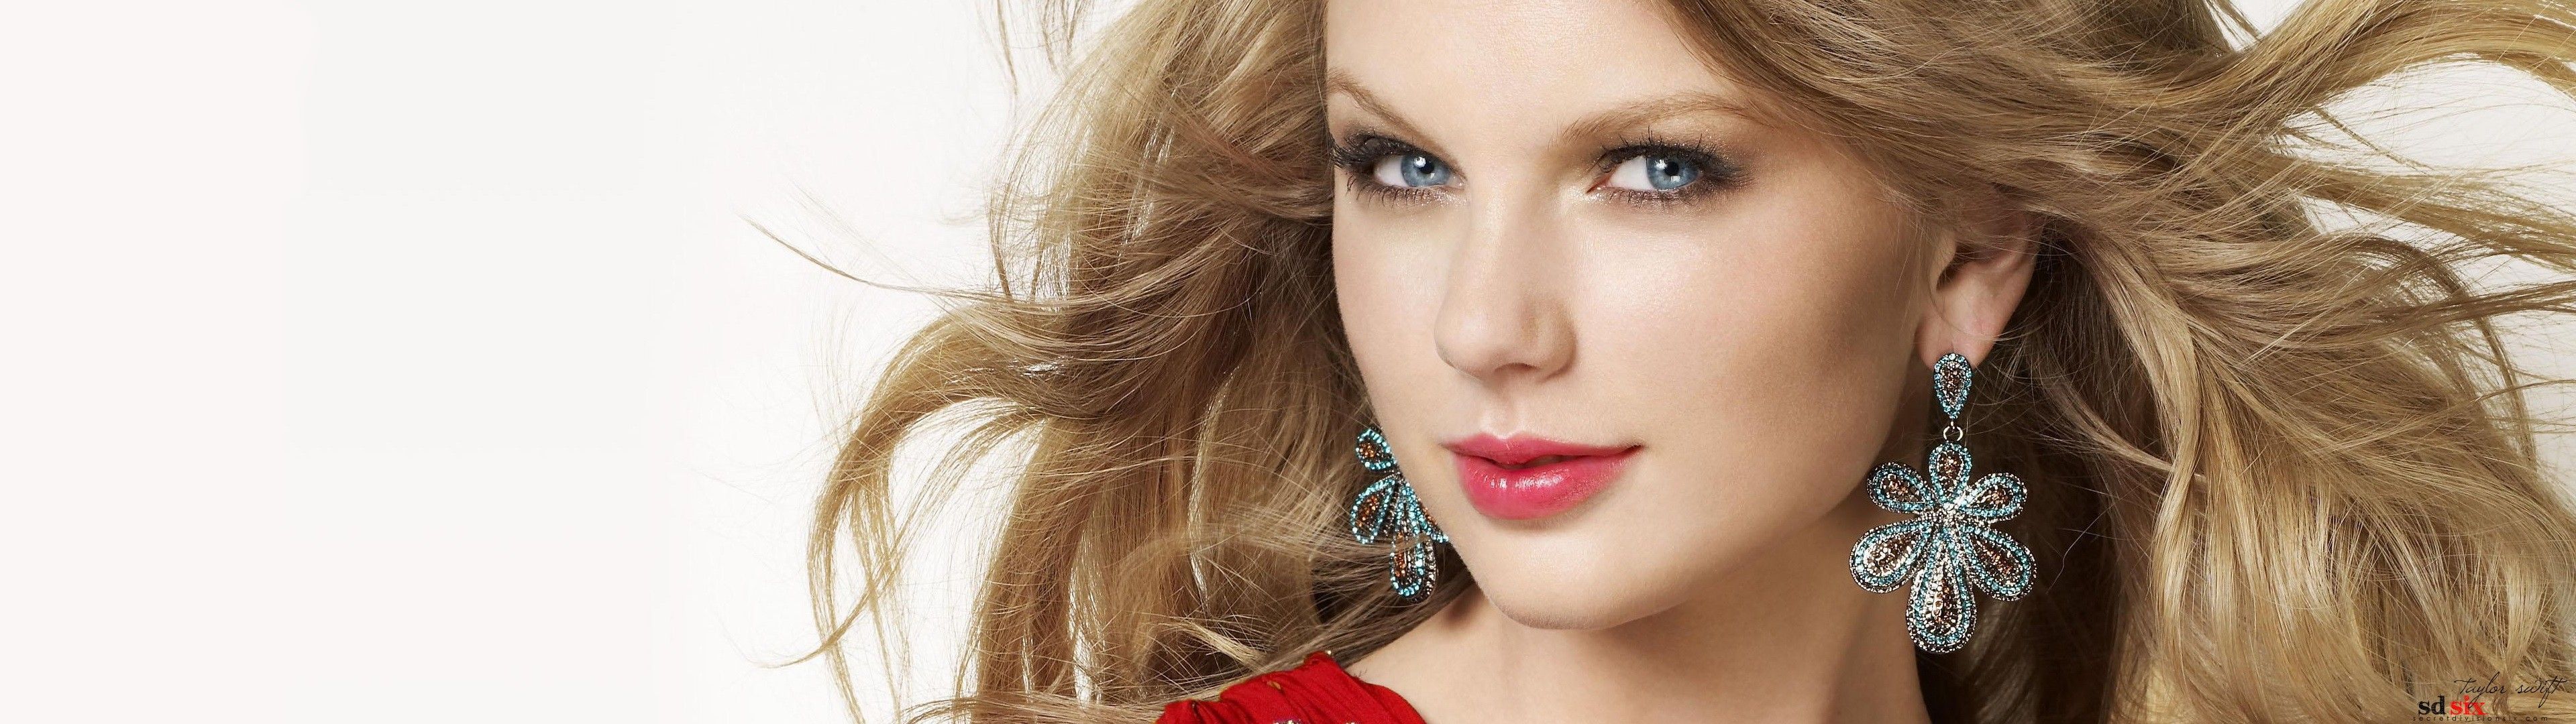 Taylor-Swift-Models-Celebrity-Hd-Wallpaper.jpg